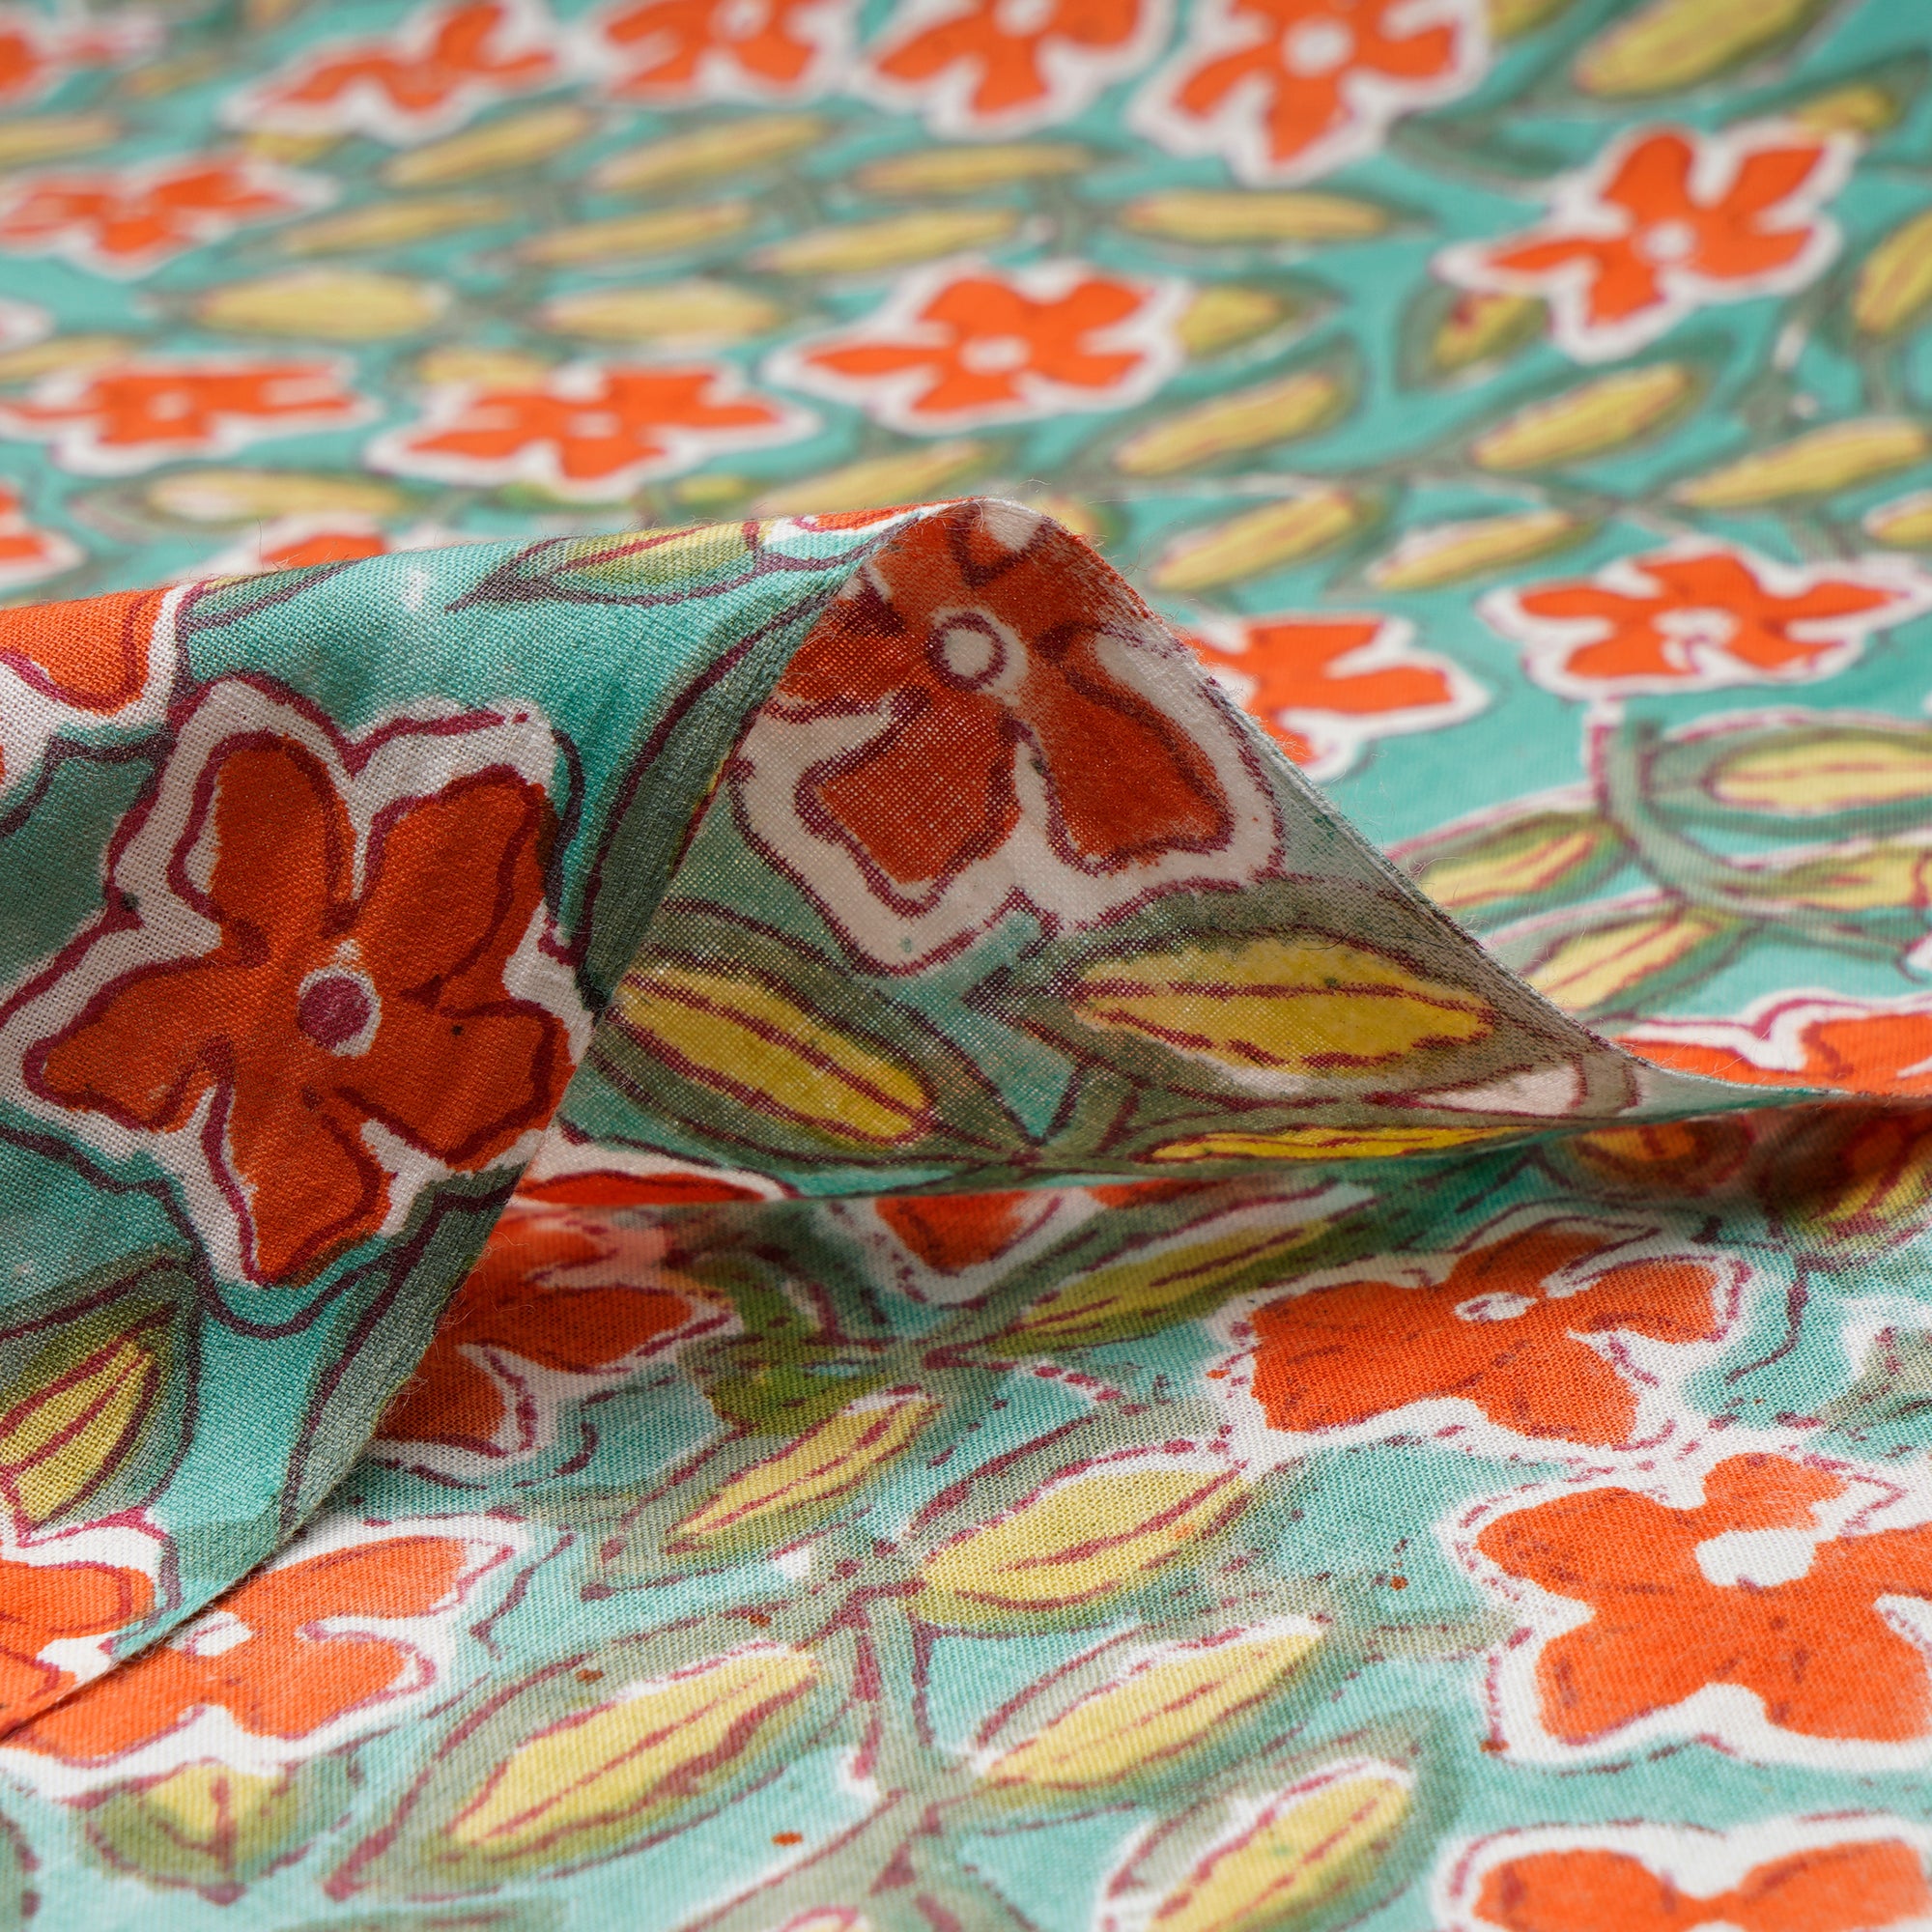 Green-Orange Floral Pattern Natural Dye Hand Block Bagru Printed Cotton Fabric